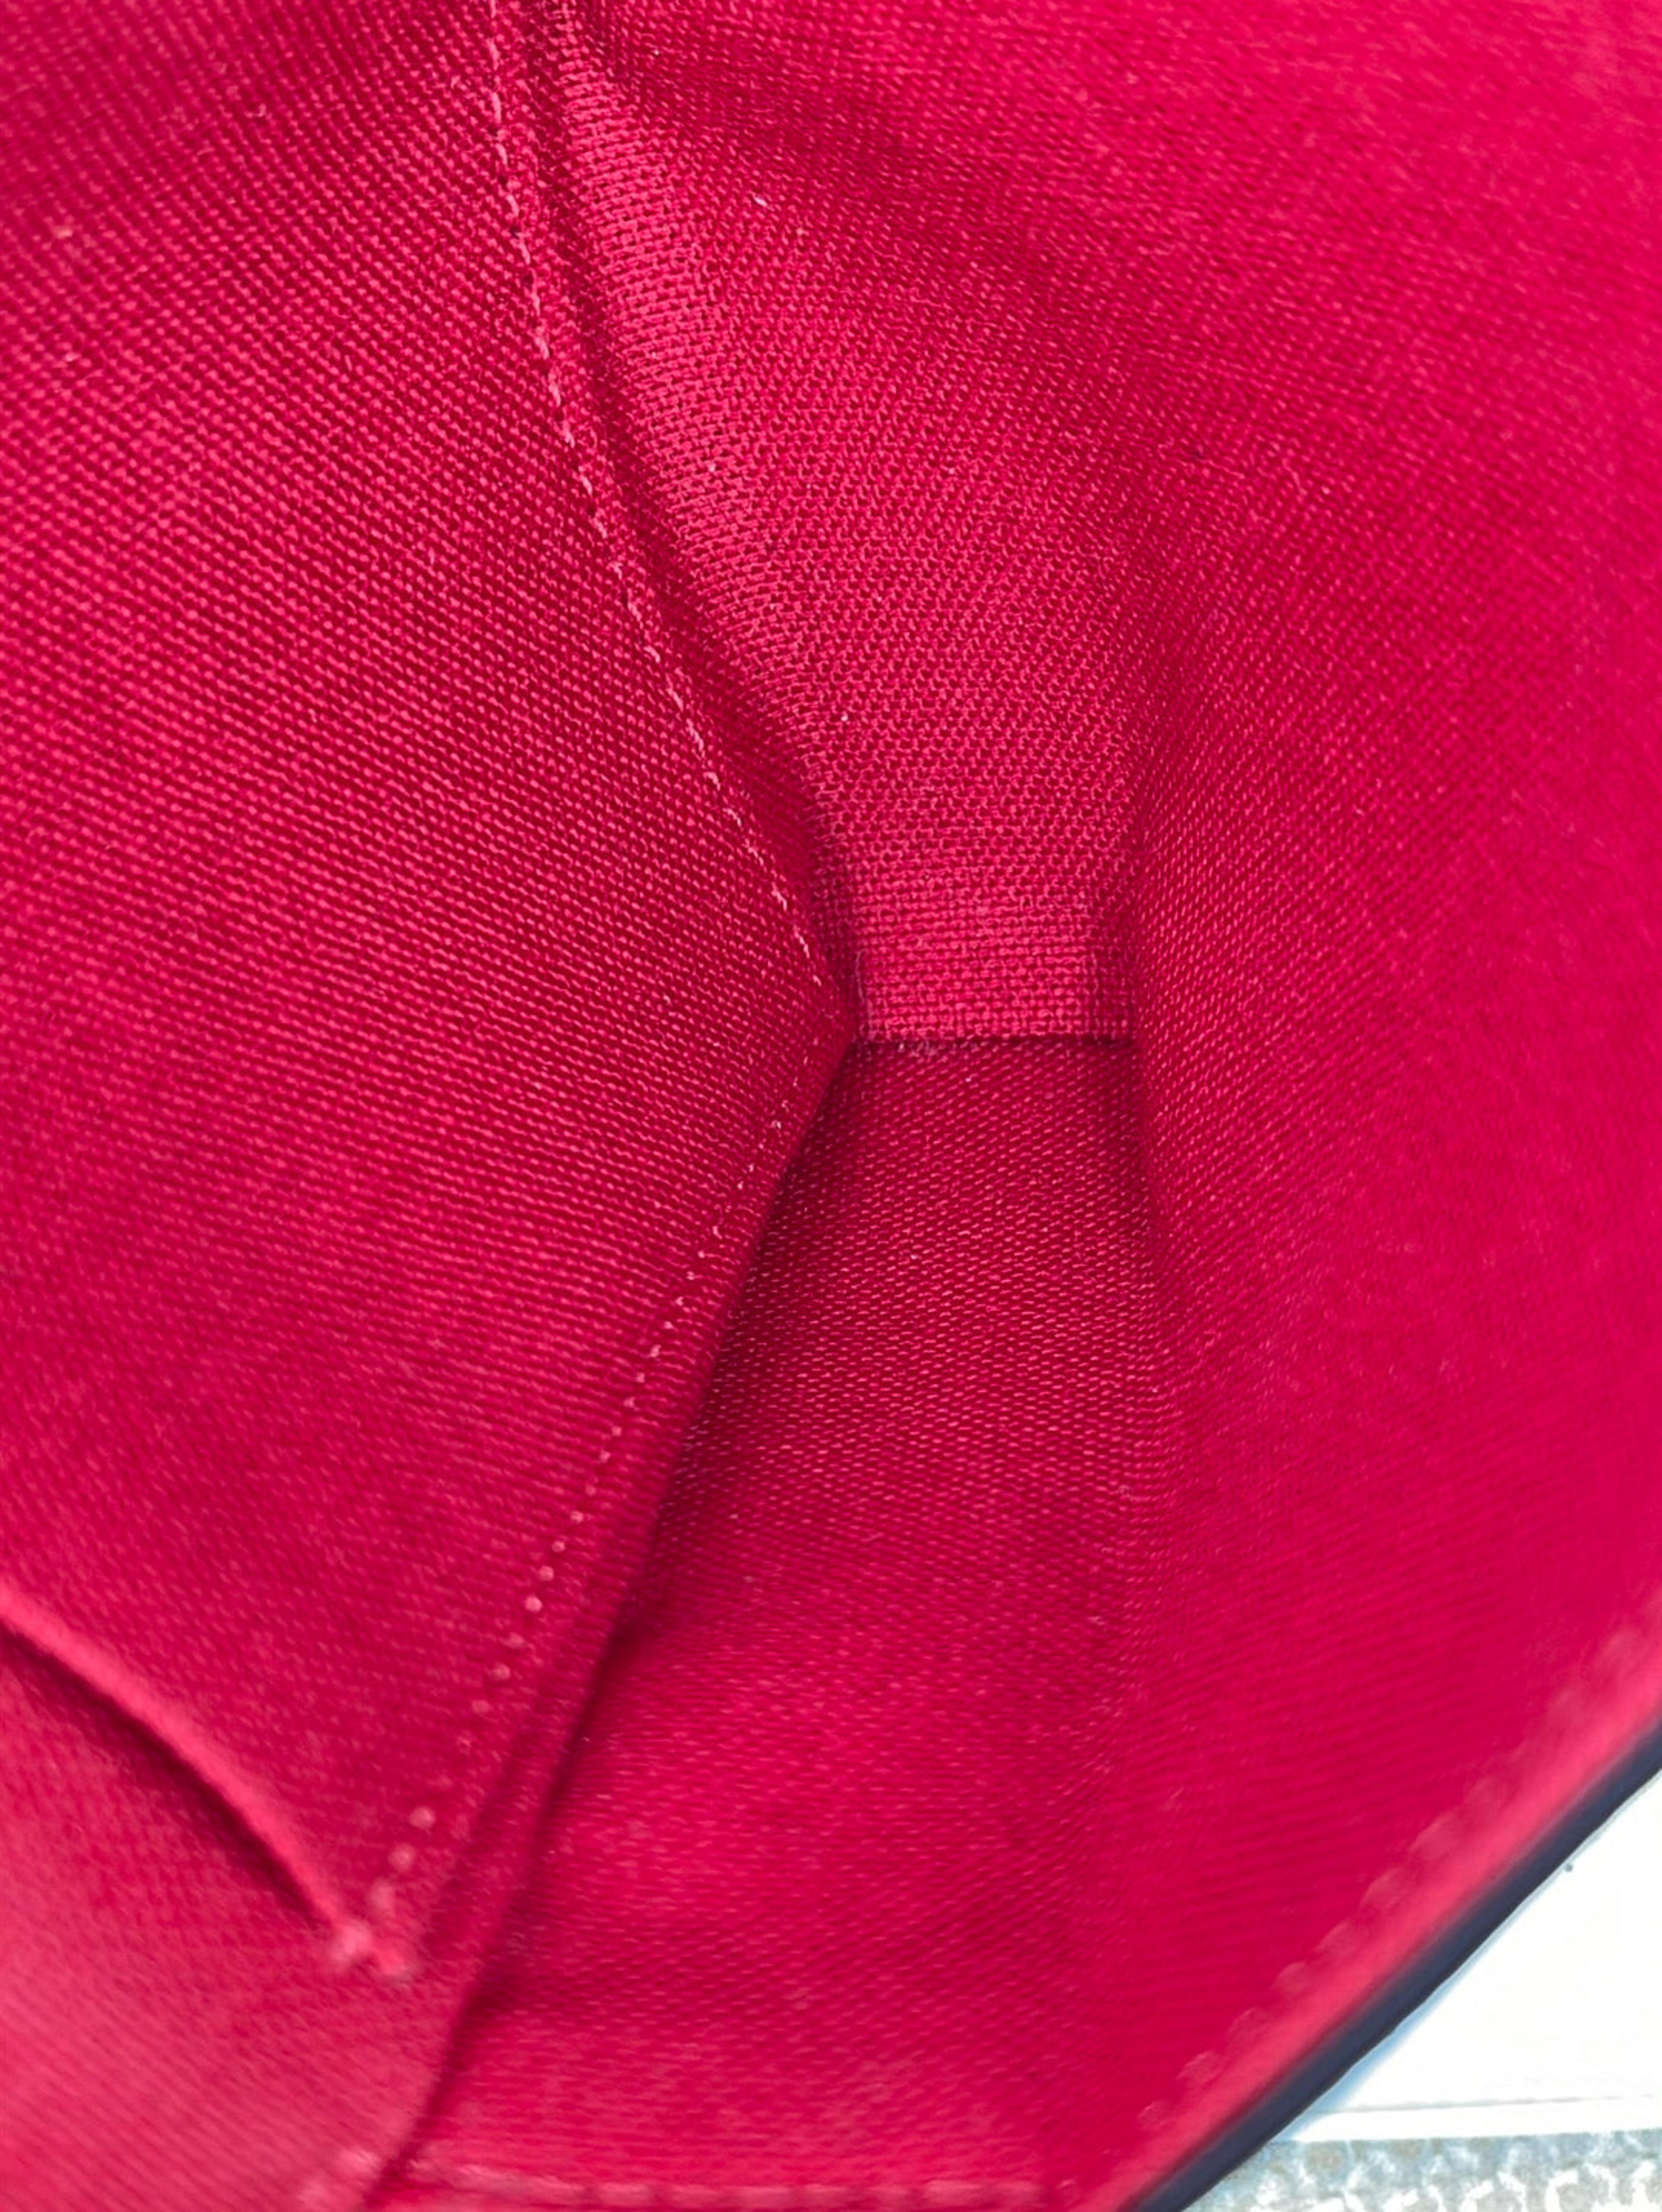 Preloved Louis Vuitton Felicie Pochette Red Empreinte Leather Bag